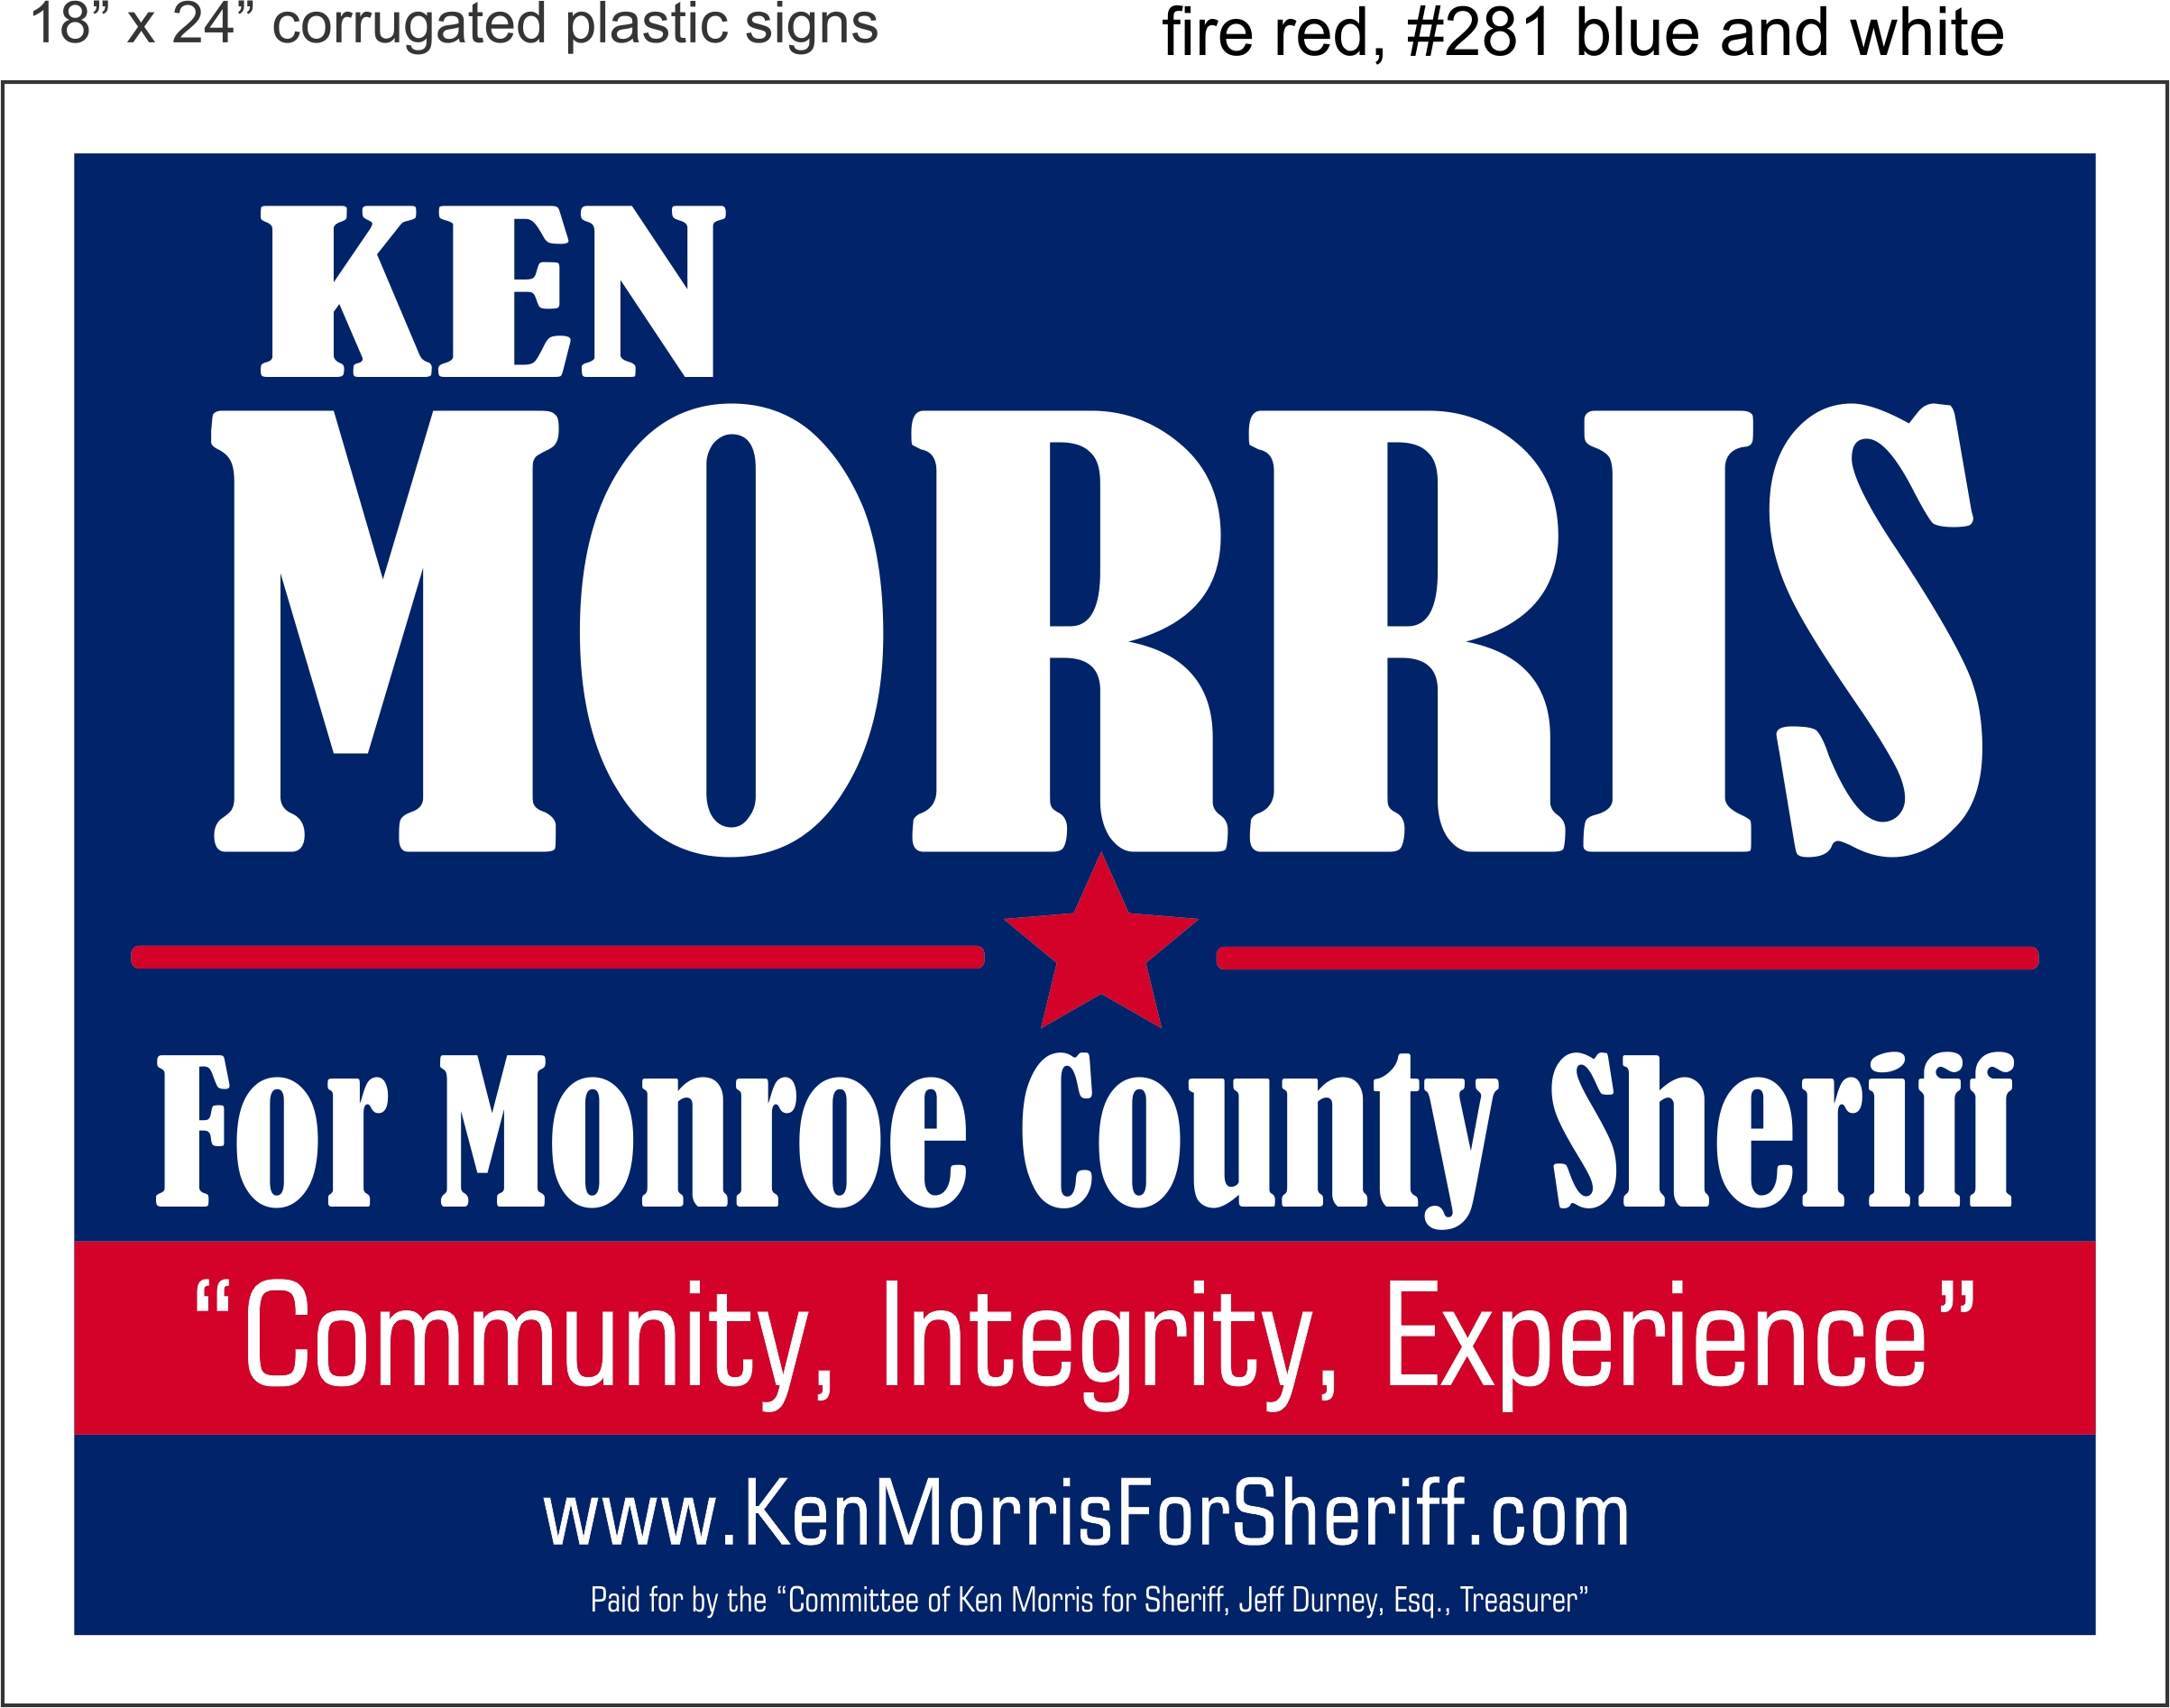 Ken Morris for Sheriff logo